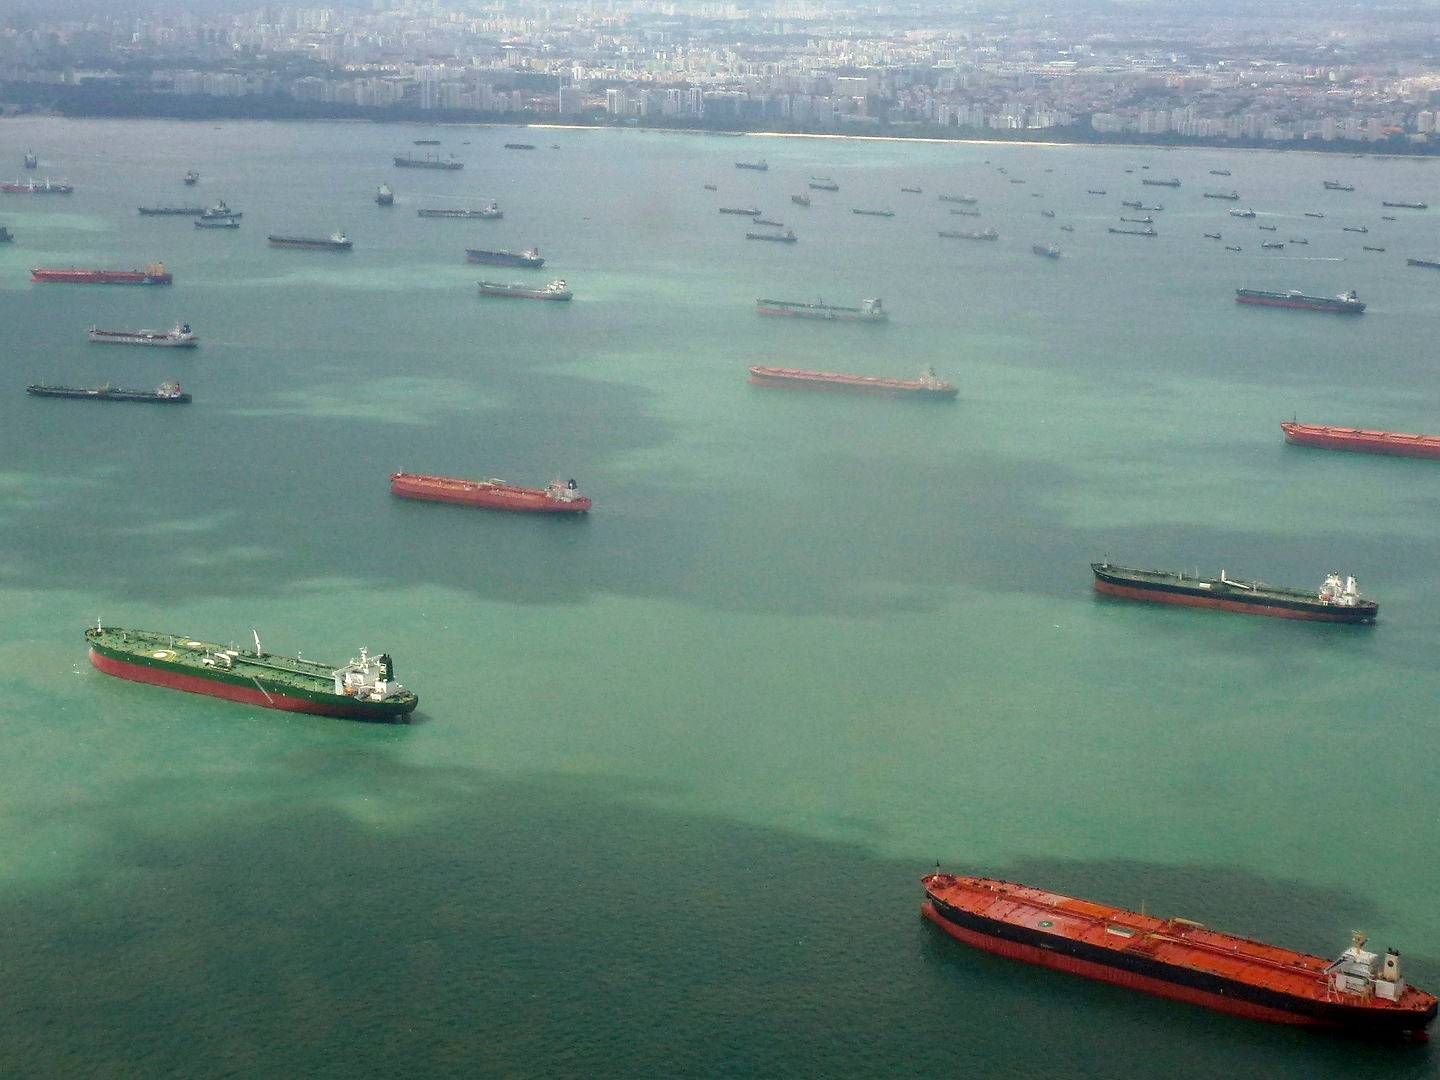 TFG Marine er etableret af Trafigura og John Fredriksen-rederierne Frontline og Golden Ocean. Selskabet har base i Singapore. | Foto: Toby Melville/Reuters/Ritzau Scanpix